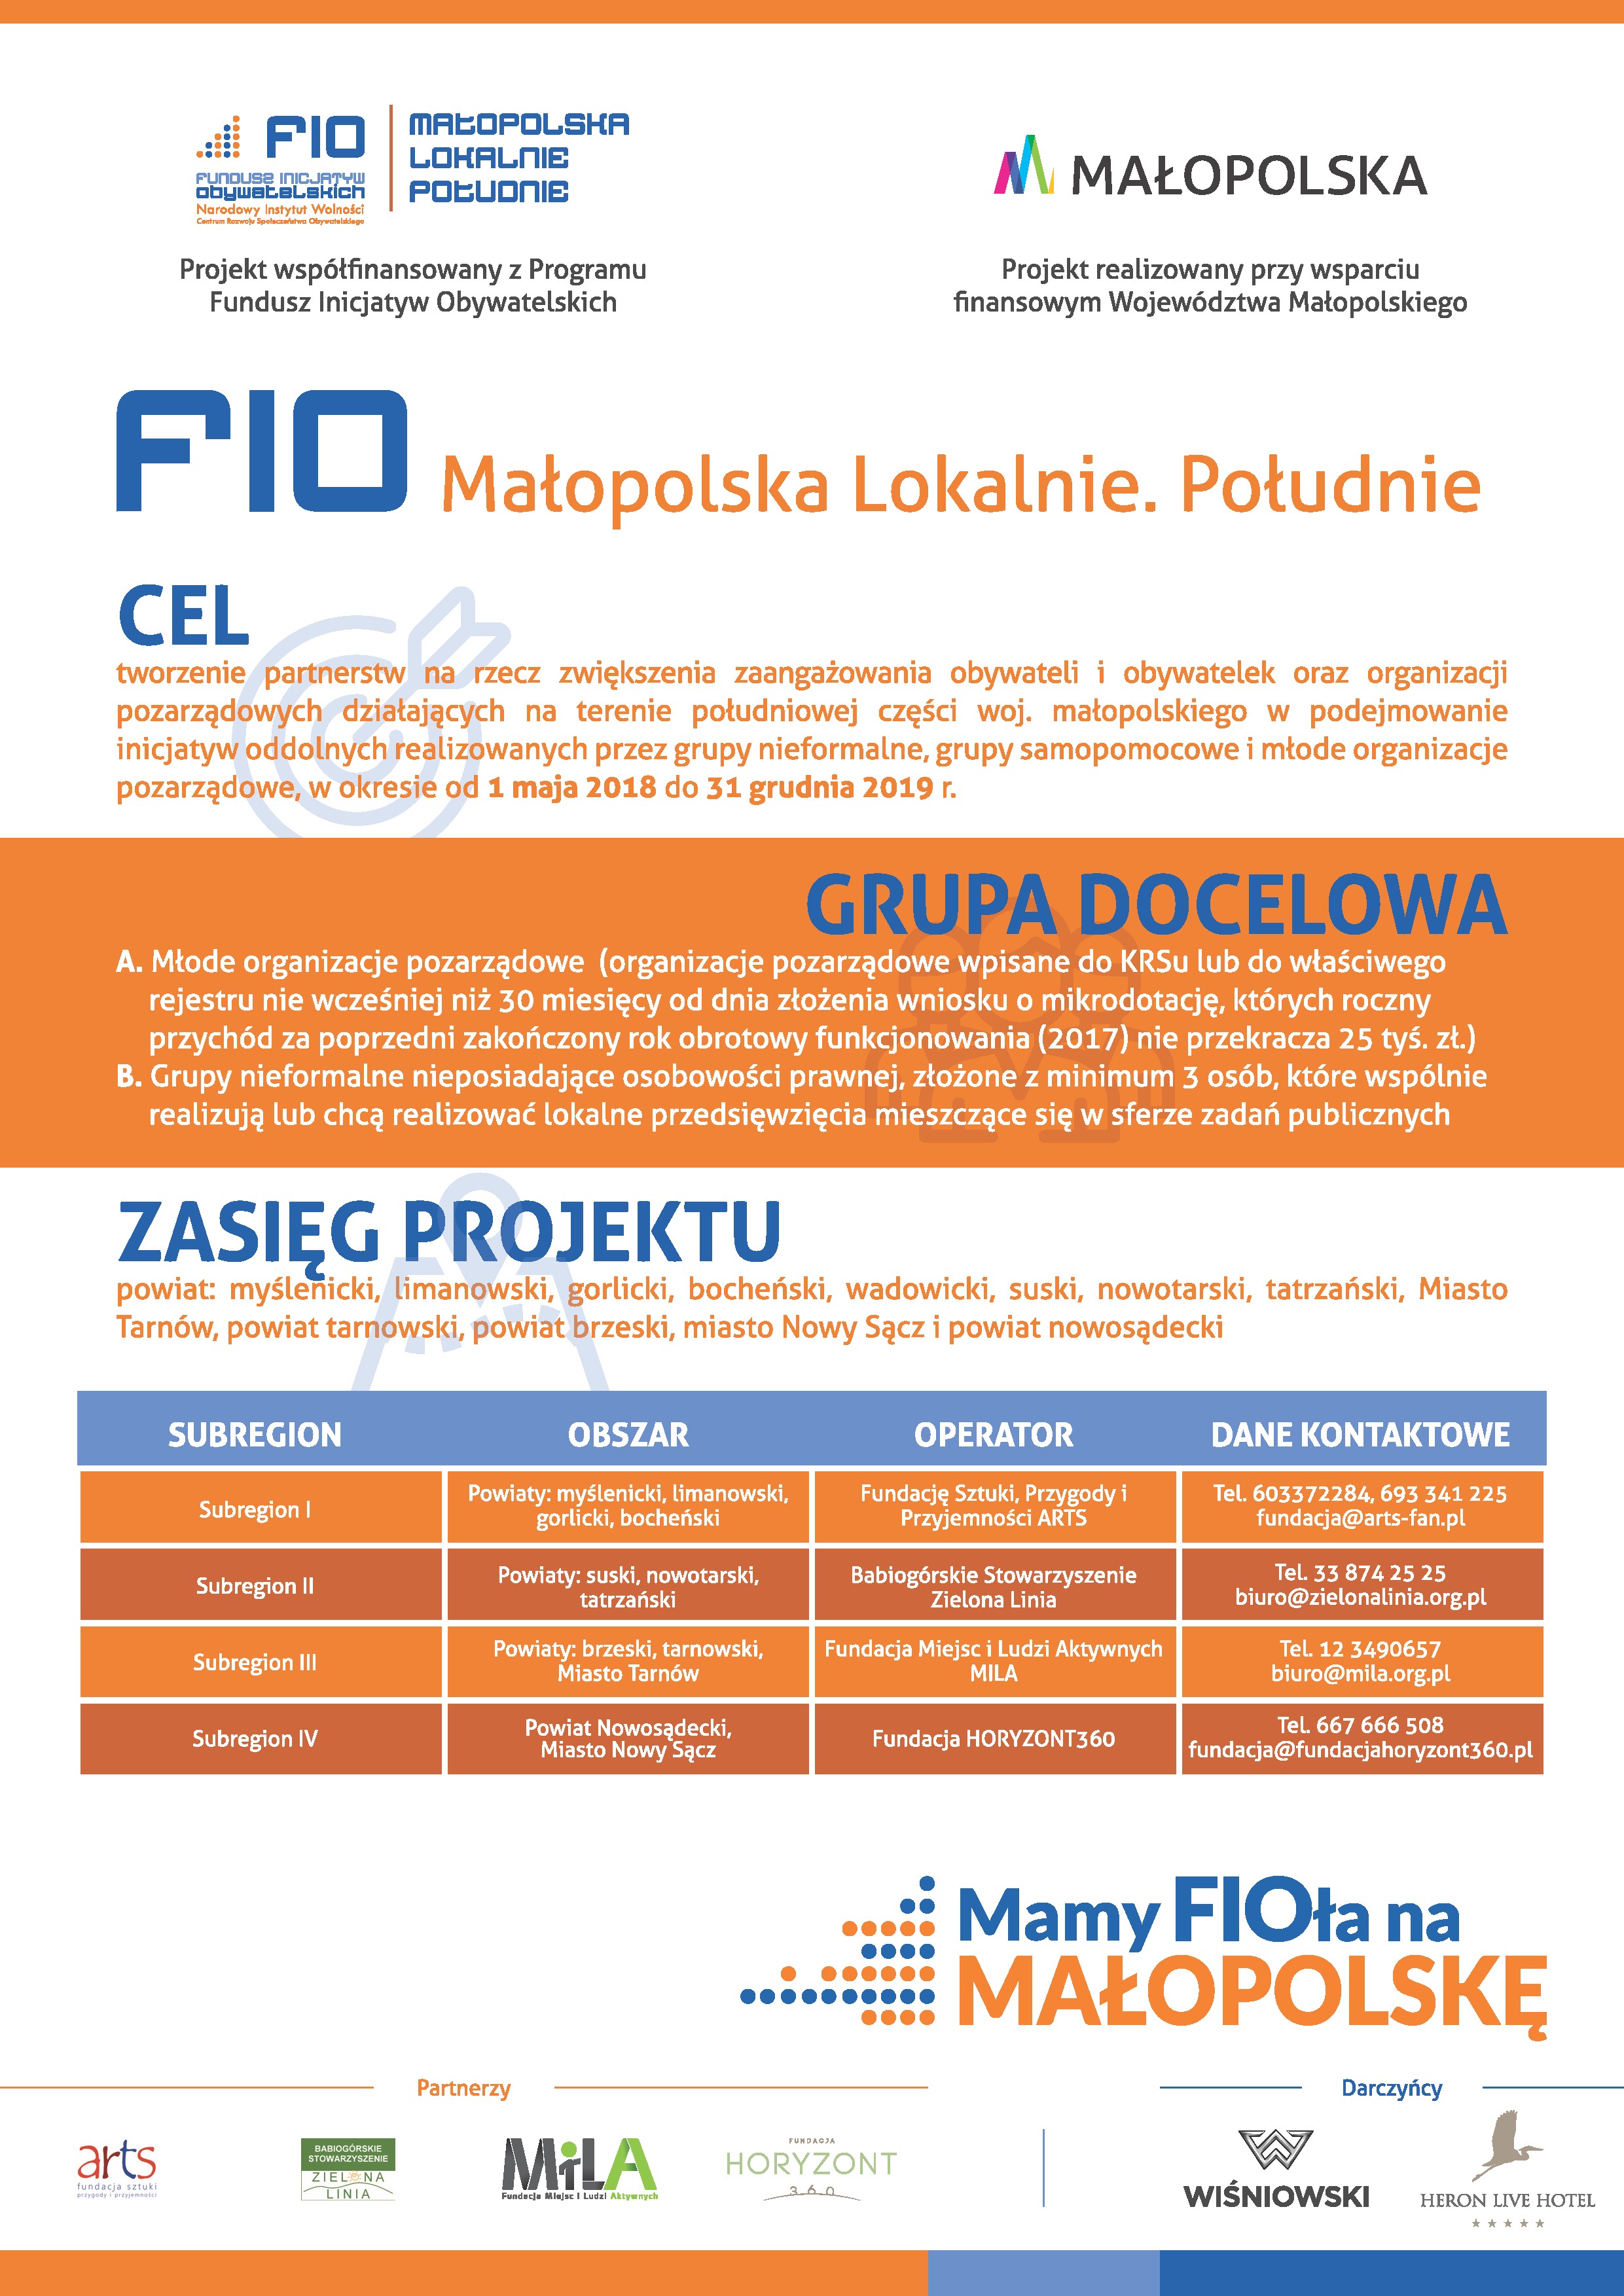 Projekt "FIO - Małopolska Lokalnie. Południe"